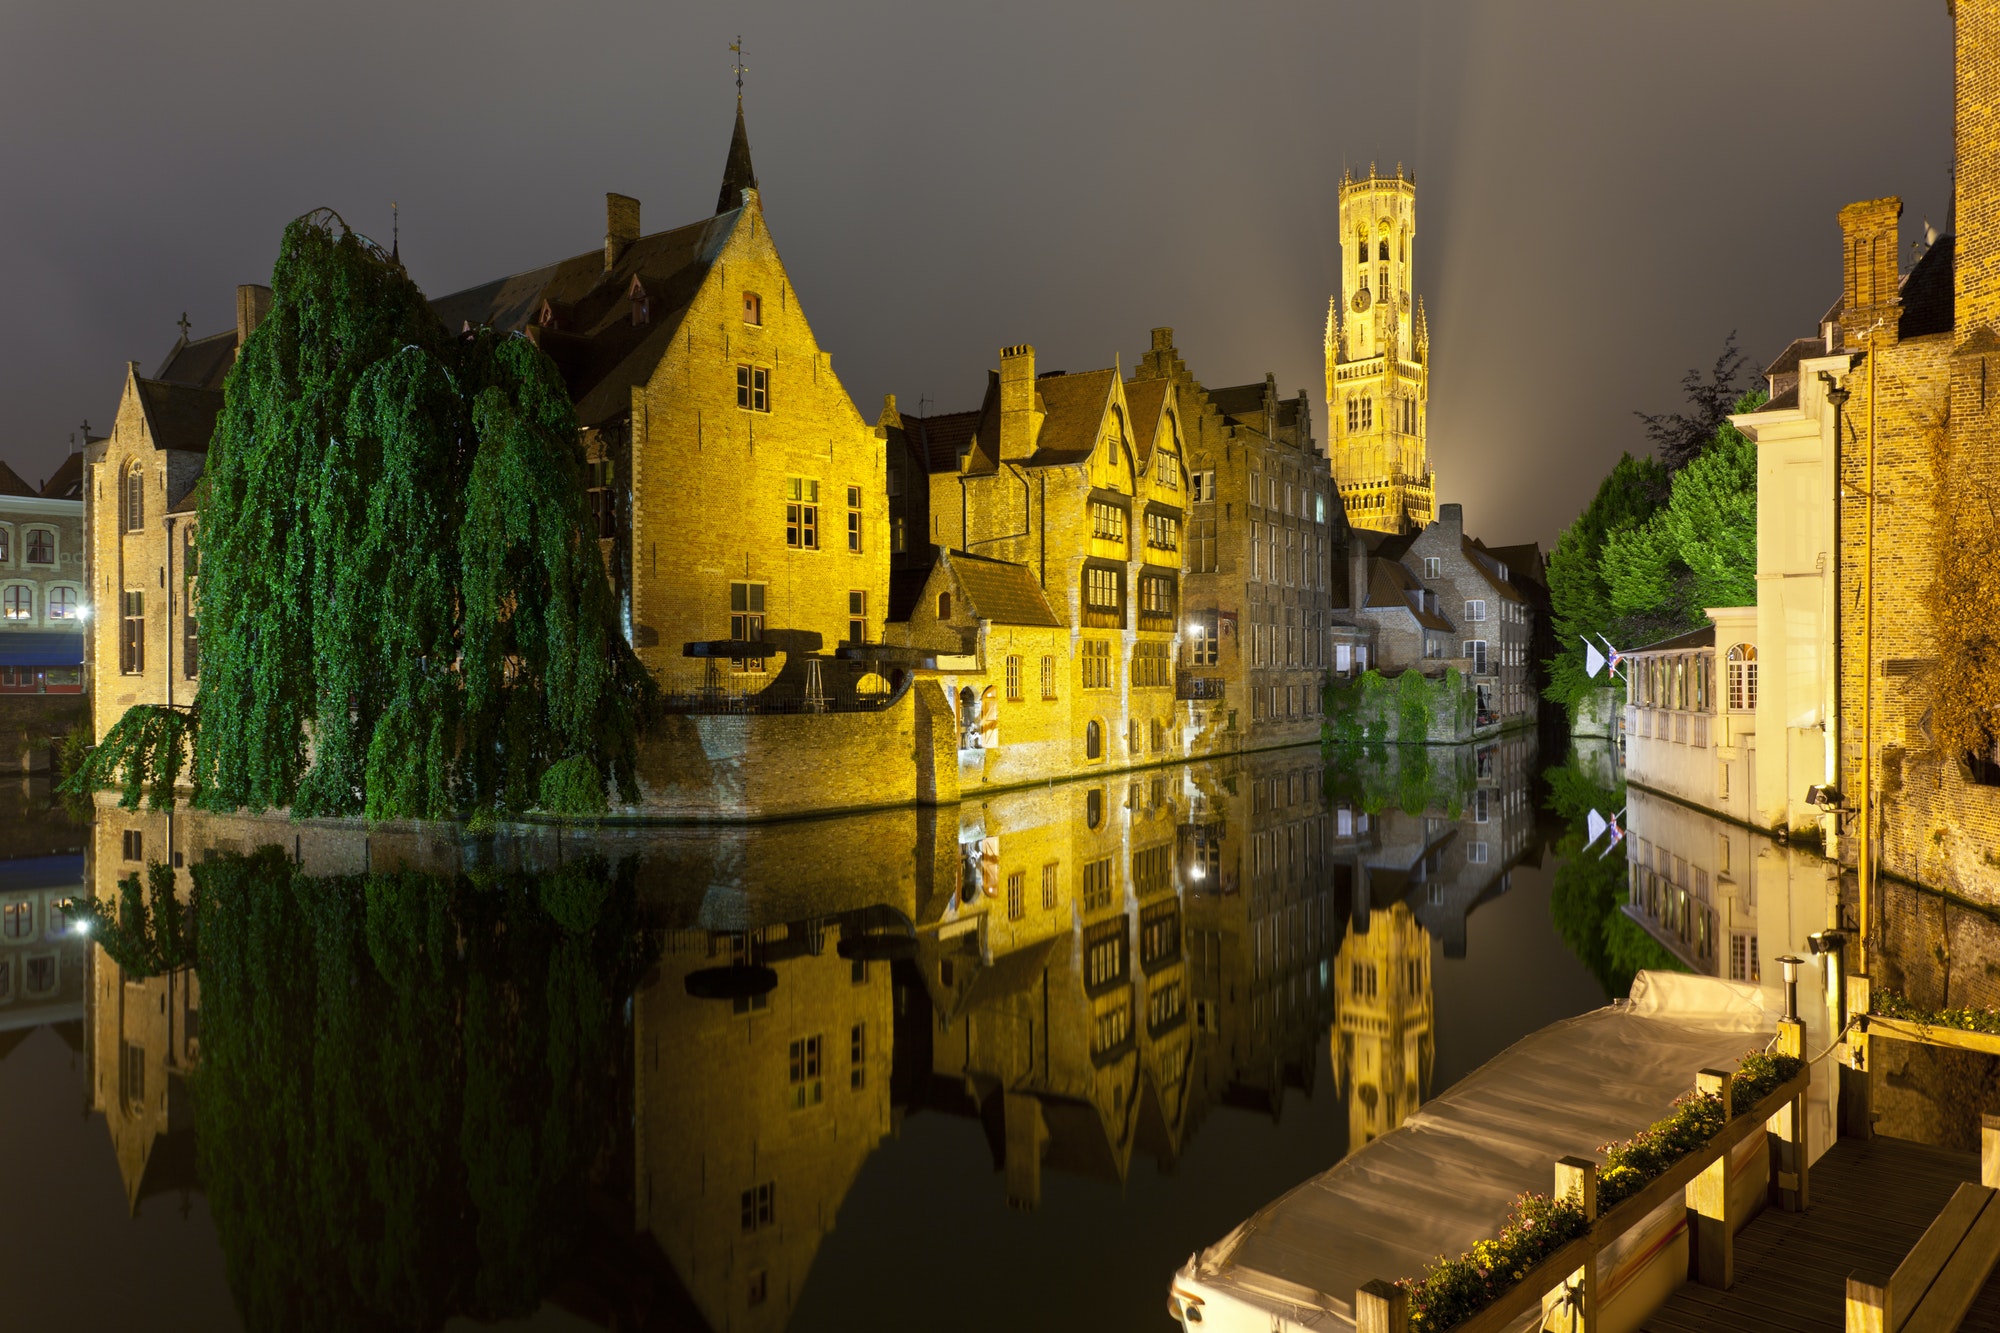 Rozenhoedkaai In Bruges At Night